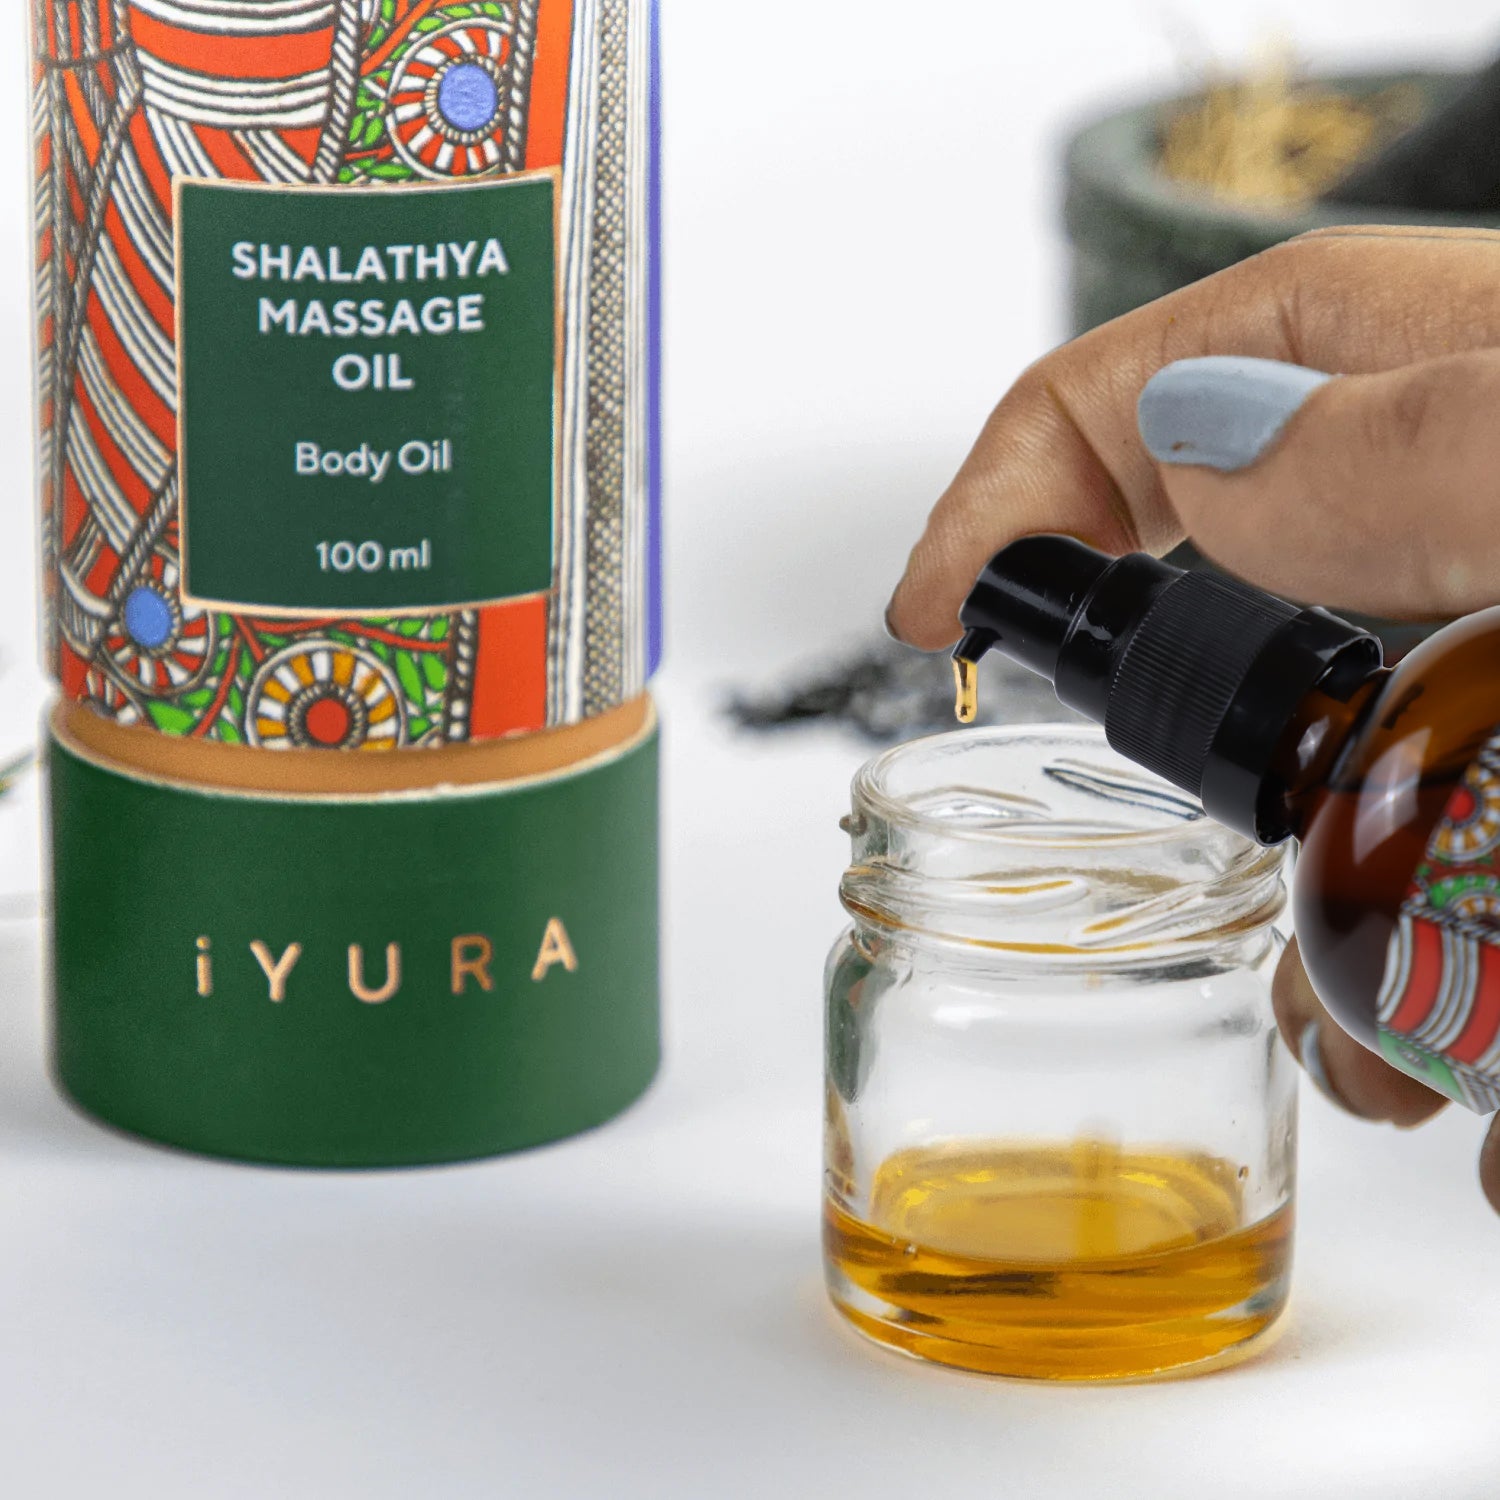 Shalathya Massage Oil